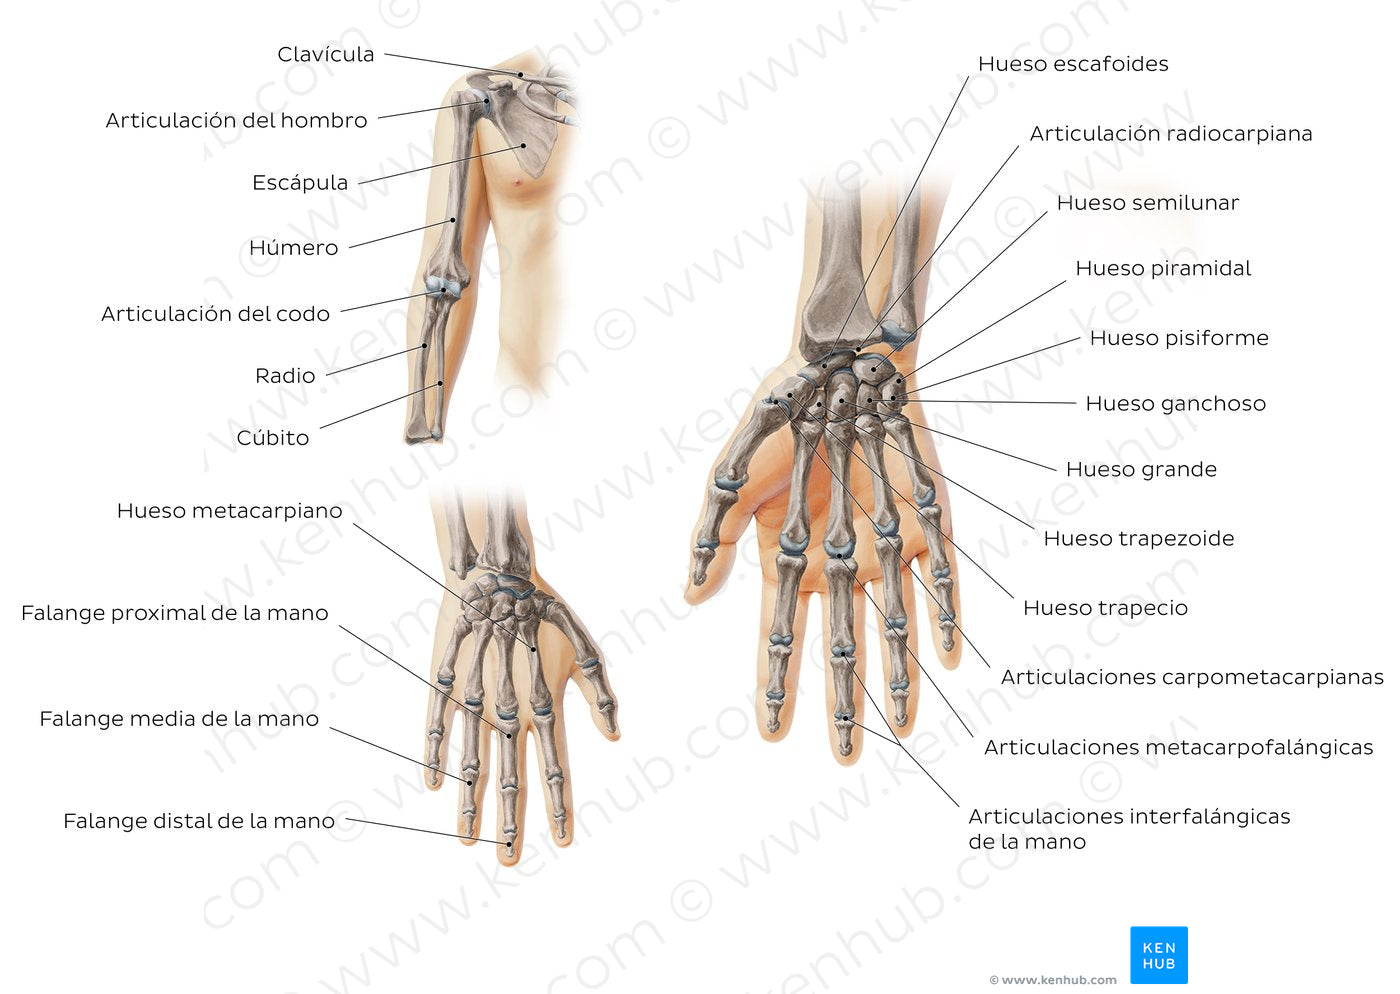 Main bones of the upper extremity (Spanish)